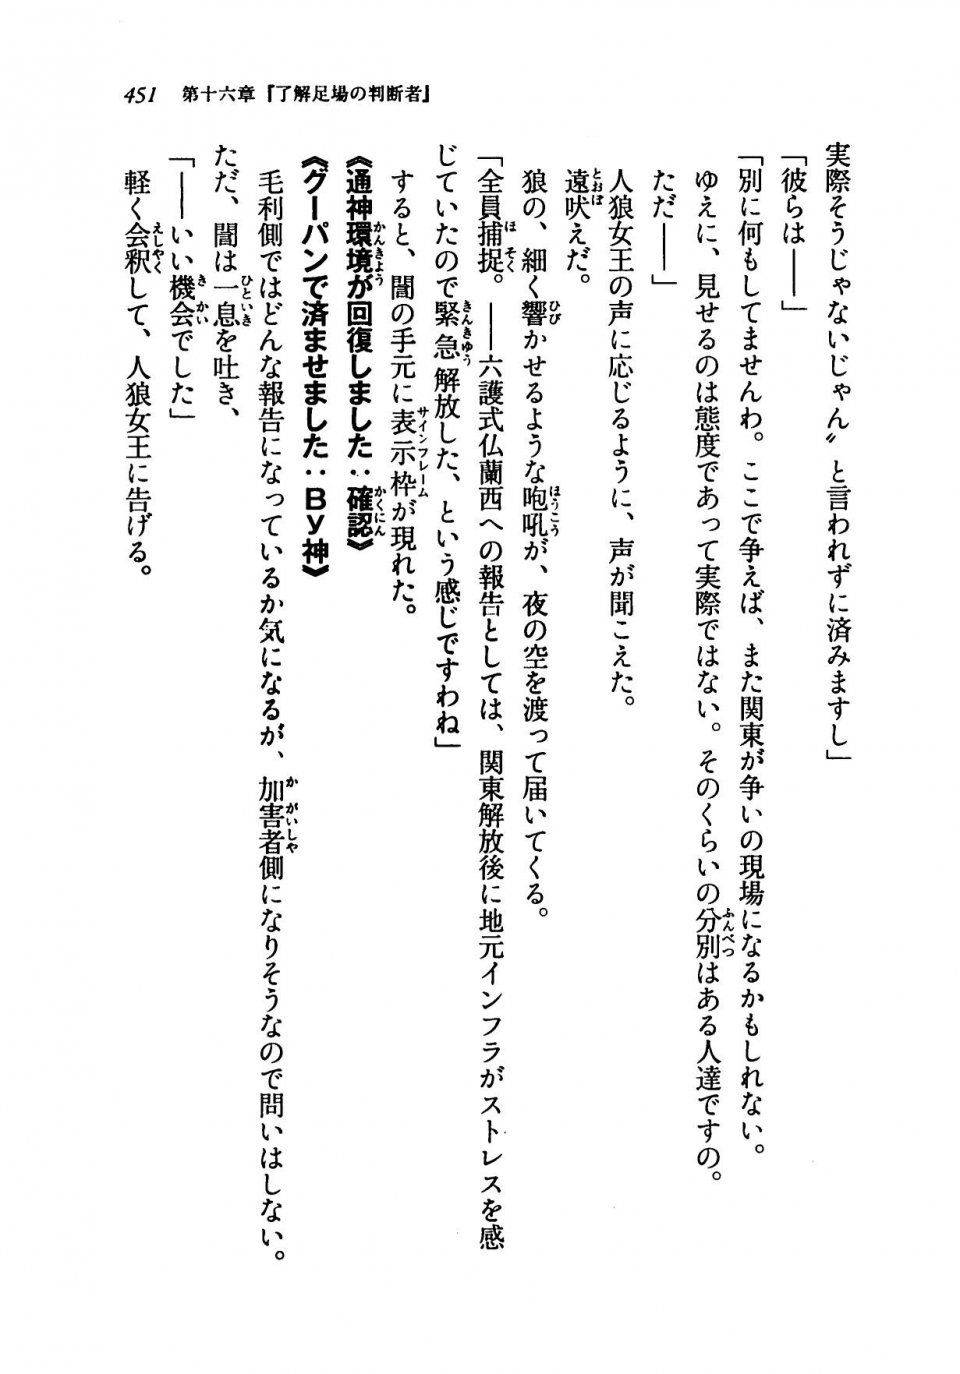 Kyoukai Senjou no Horizon LN Vol 19(8A) - Photo #451